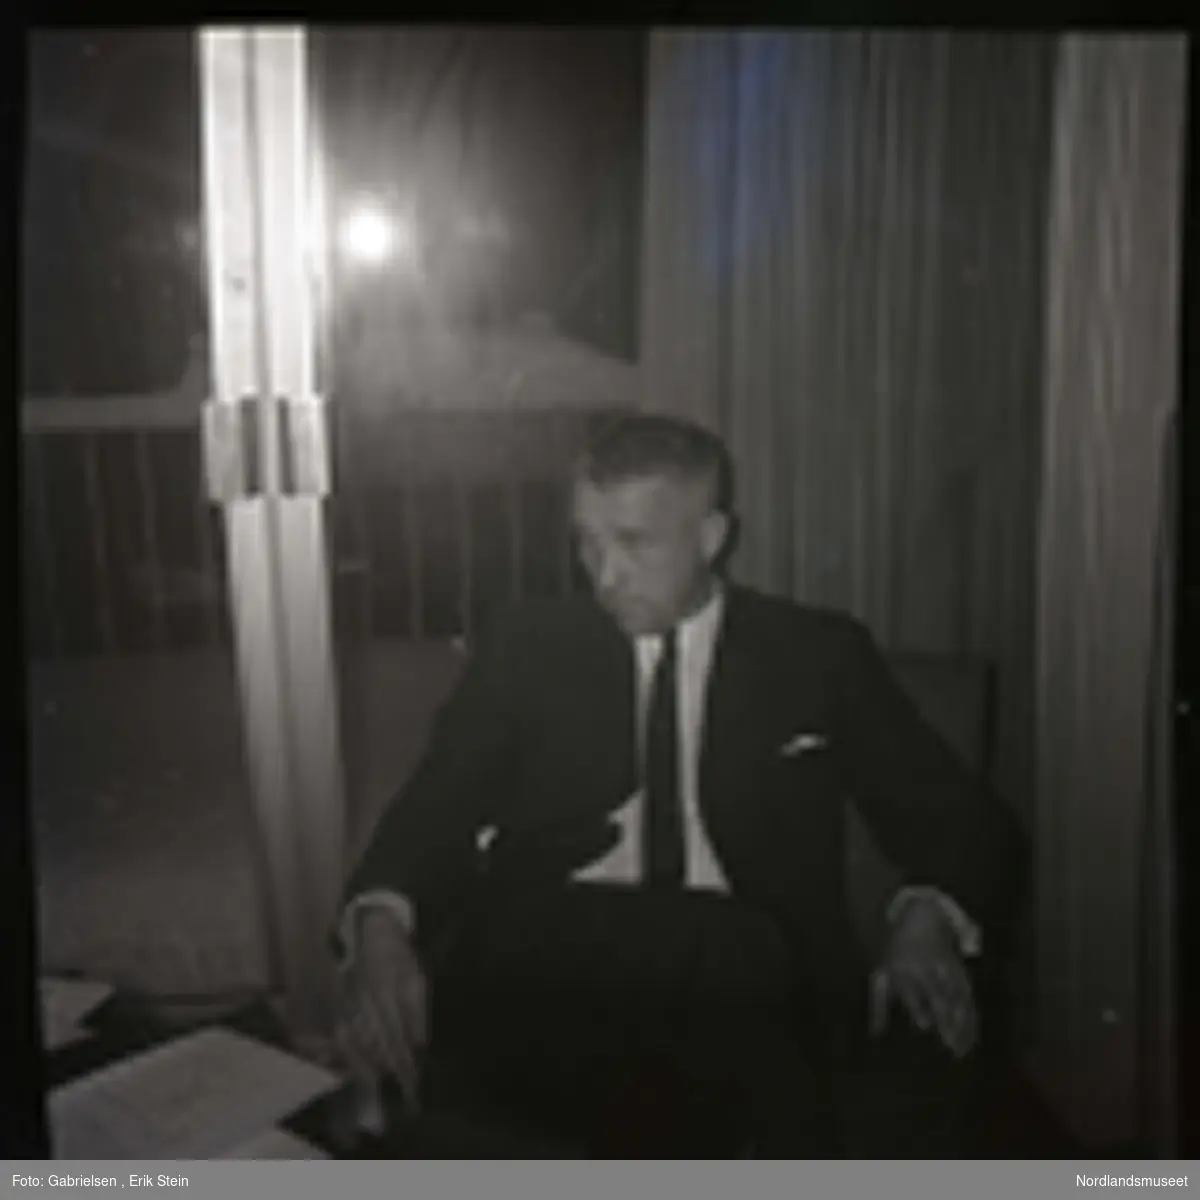 Fotografi av en mann kledd i en dress med slips 
som sitter på en stol foran en dobbeldør til en balkong
i en stue vedsiden av et bord som det ligger noen papirbunker og bøker på og man ser at det har snødd på balkongen ute og man ser et nøkkelhull til dobbeldøren
til balkongen